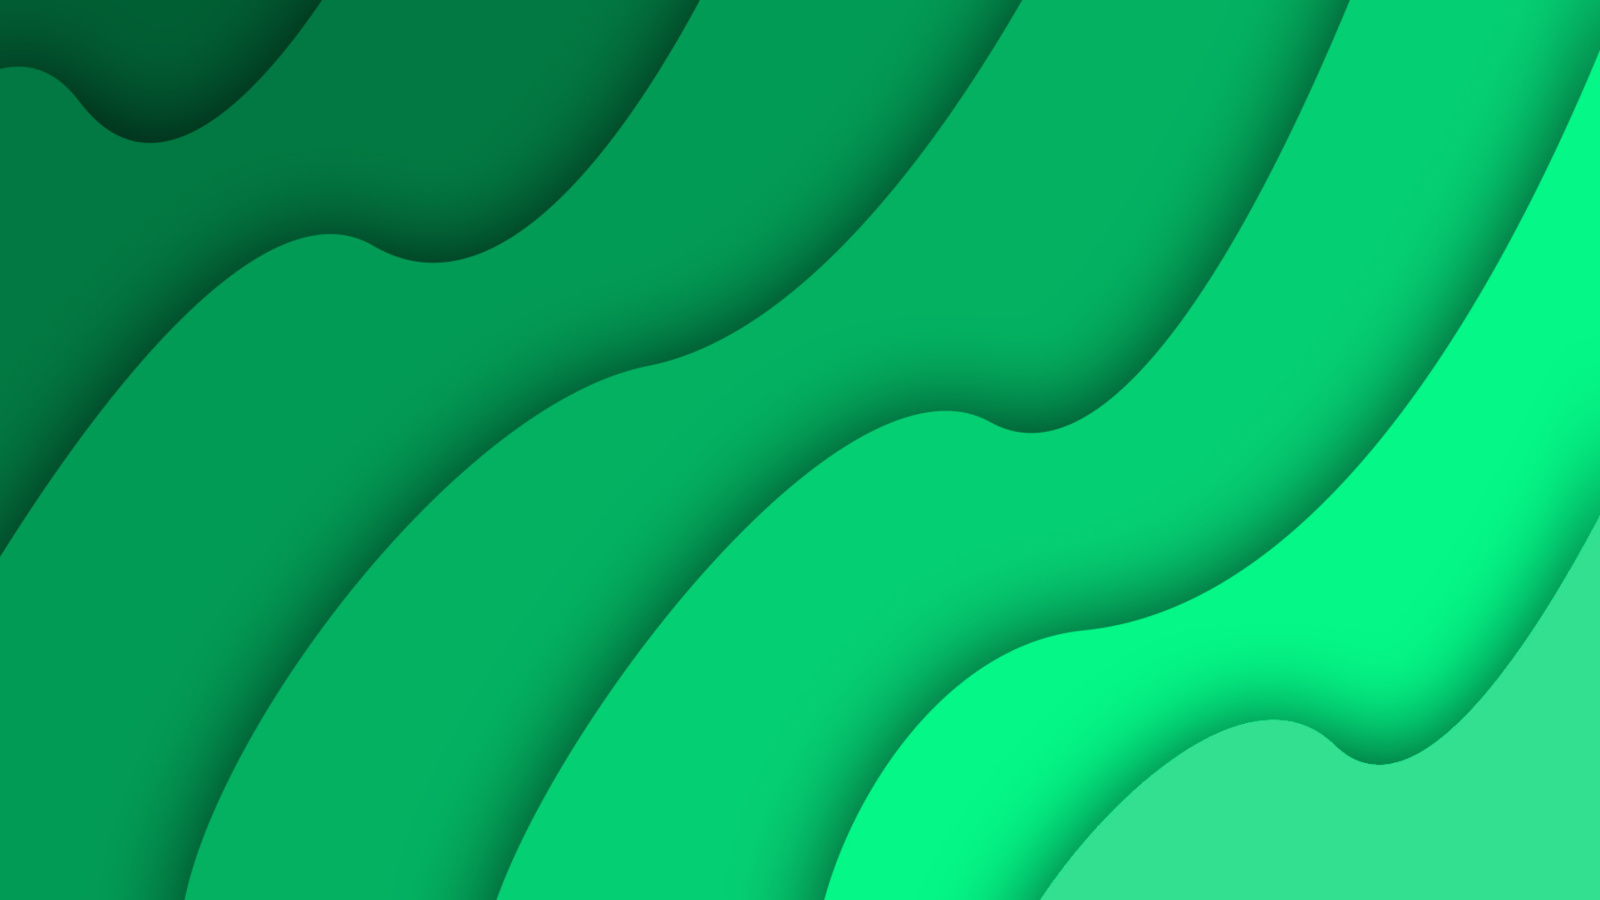 Green Waves wallpaper 1600x900